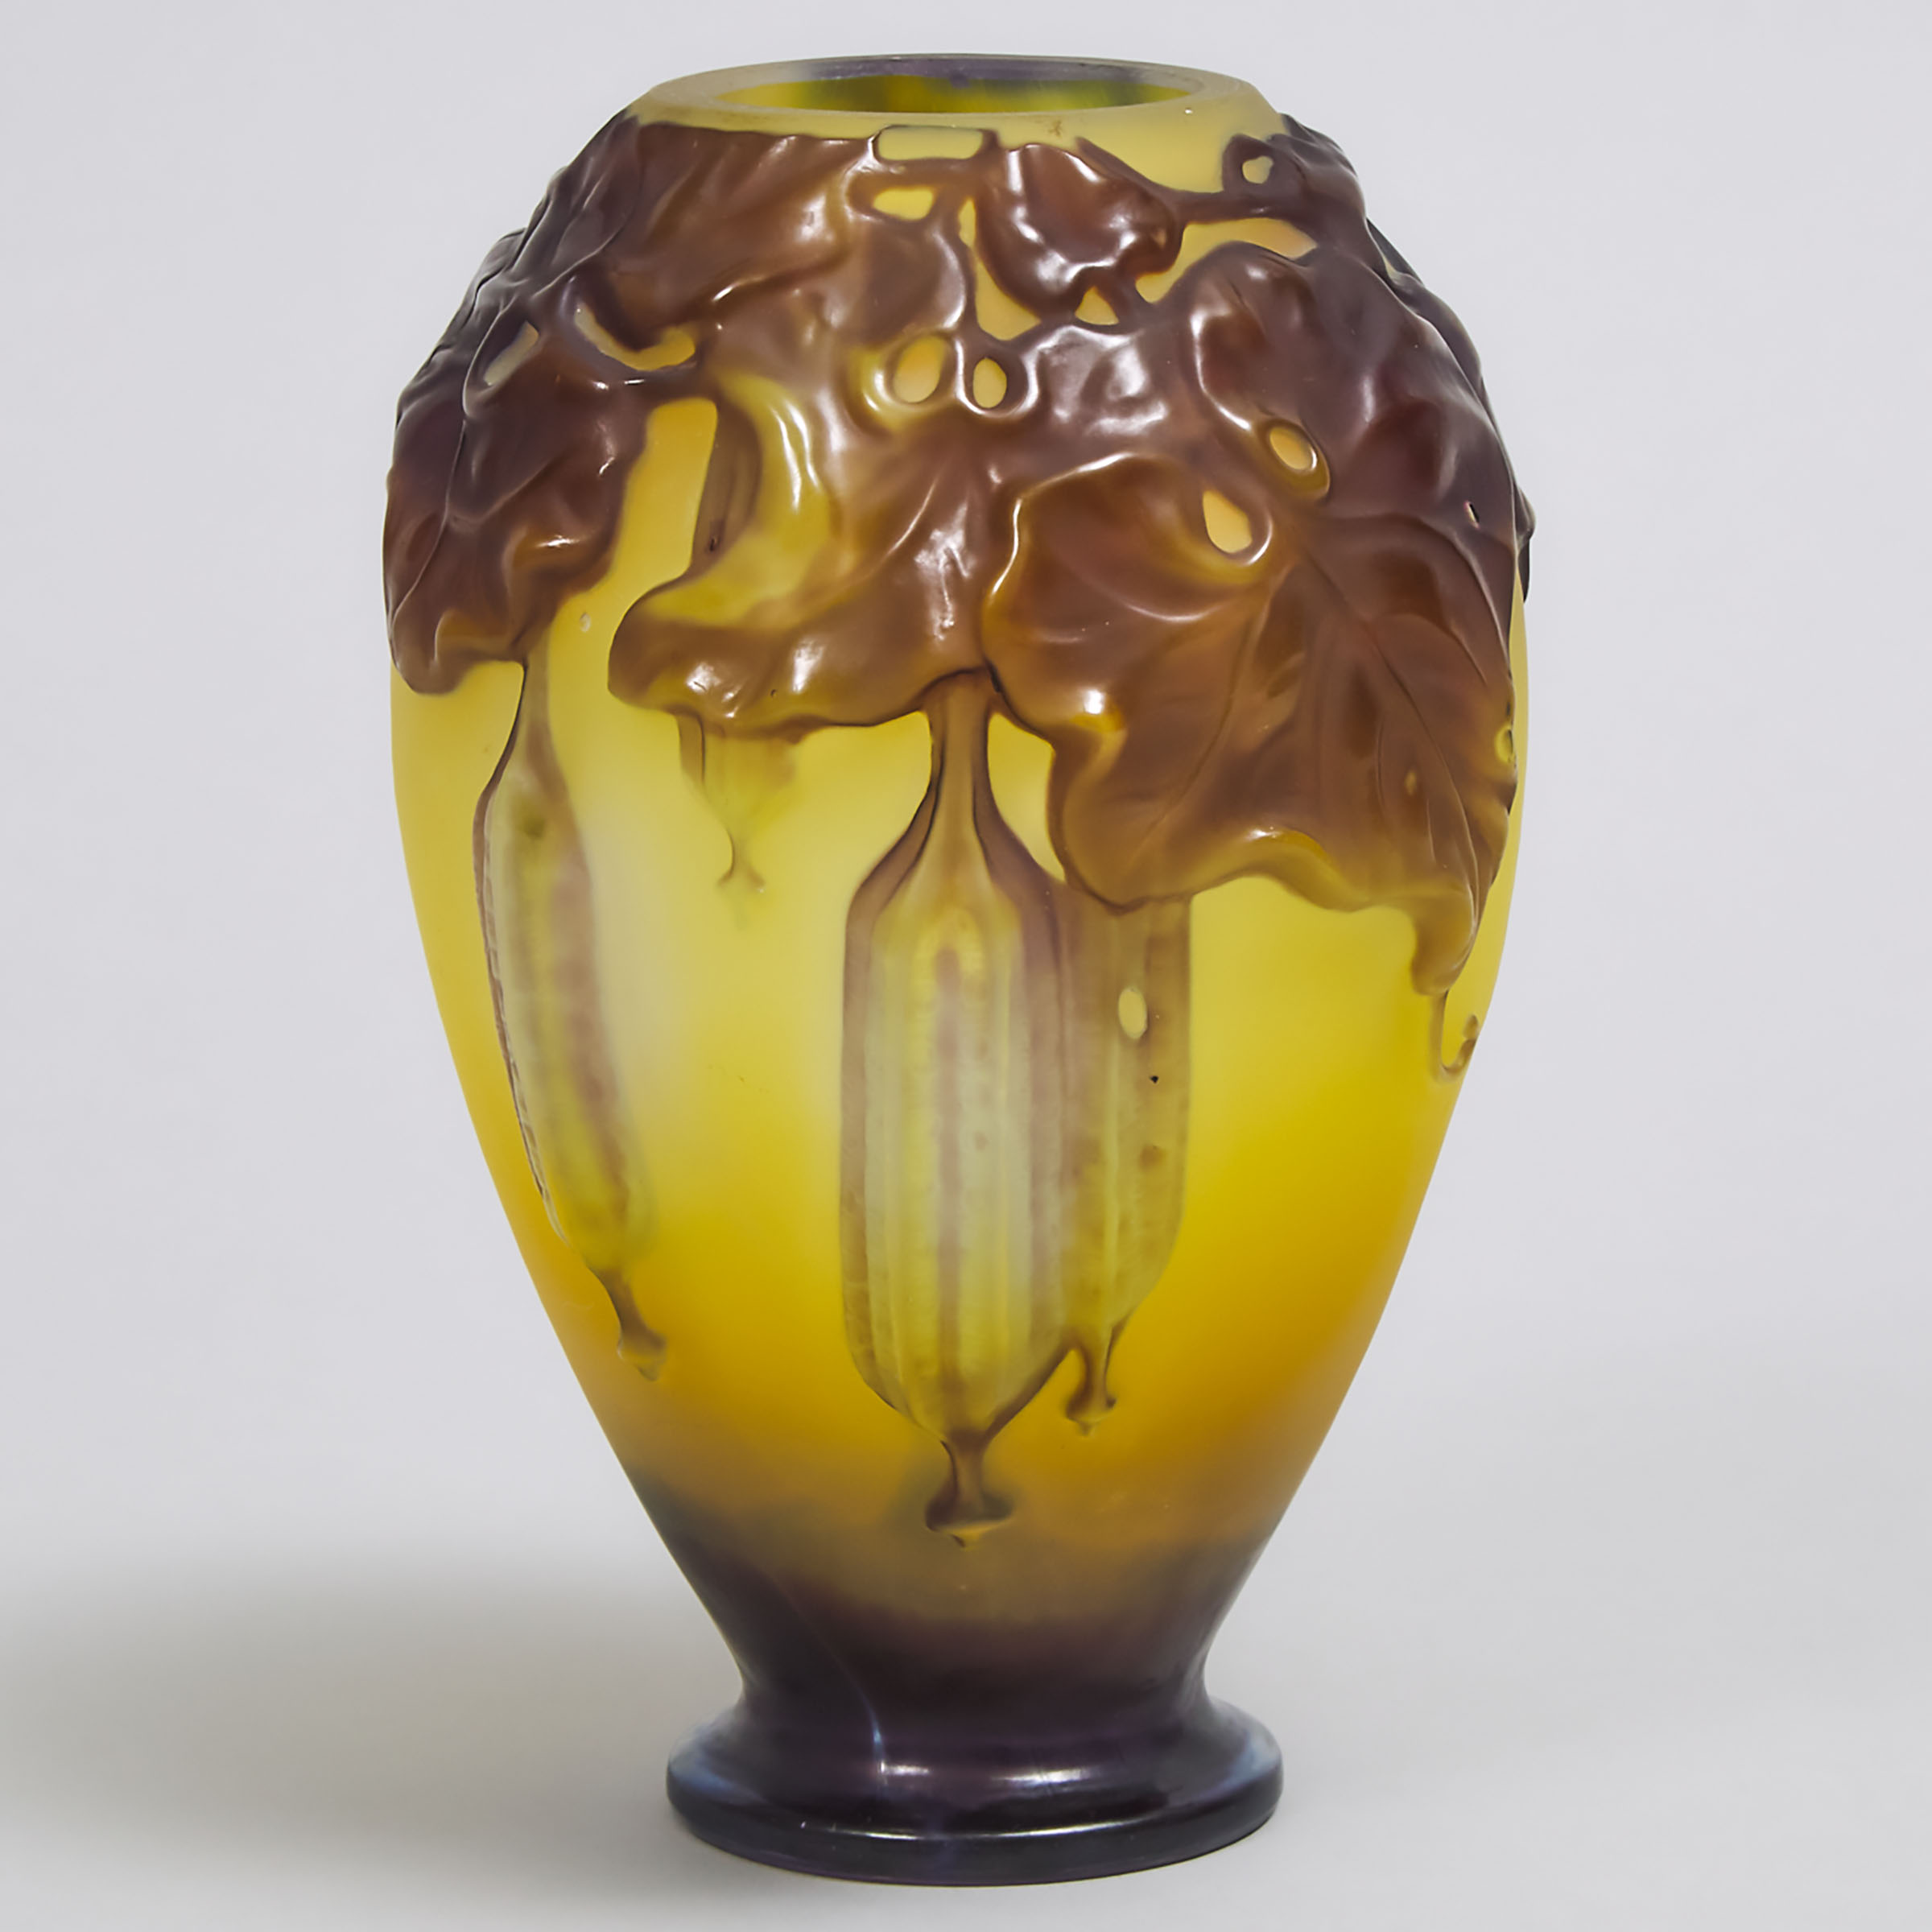 Gallé Mould-Blown Cameo Glass Vase, c.1900